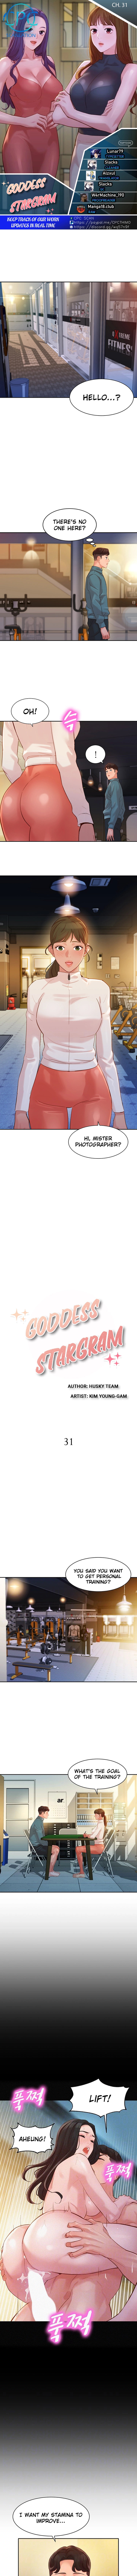 Stargram Goddess - Chapter 31 Page 1